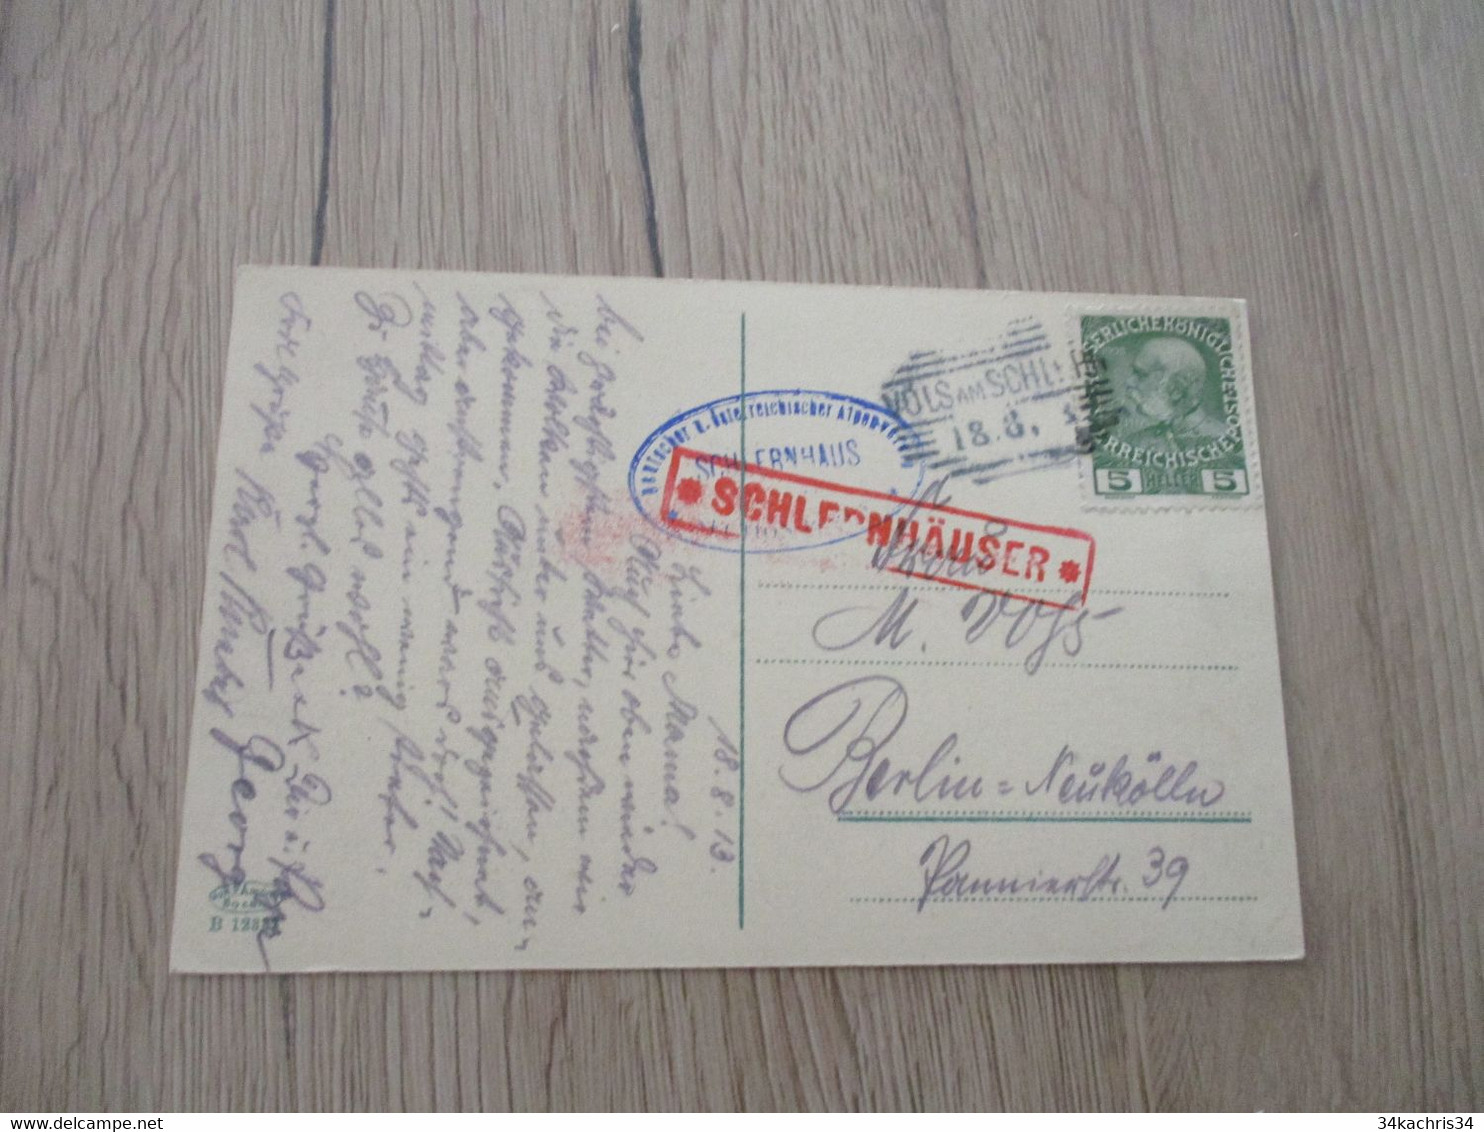 Autriche Collection Spécialisée Guerre Postablagen Postkantoor Schlernhauser Griff E Rouge - Maschinenstempel (EMA)